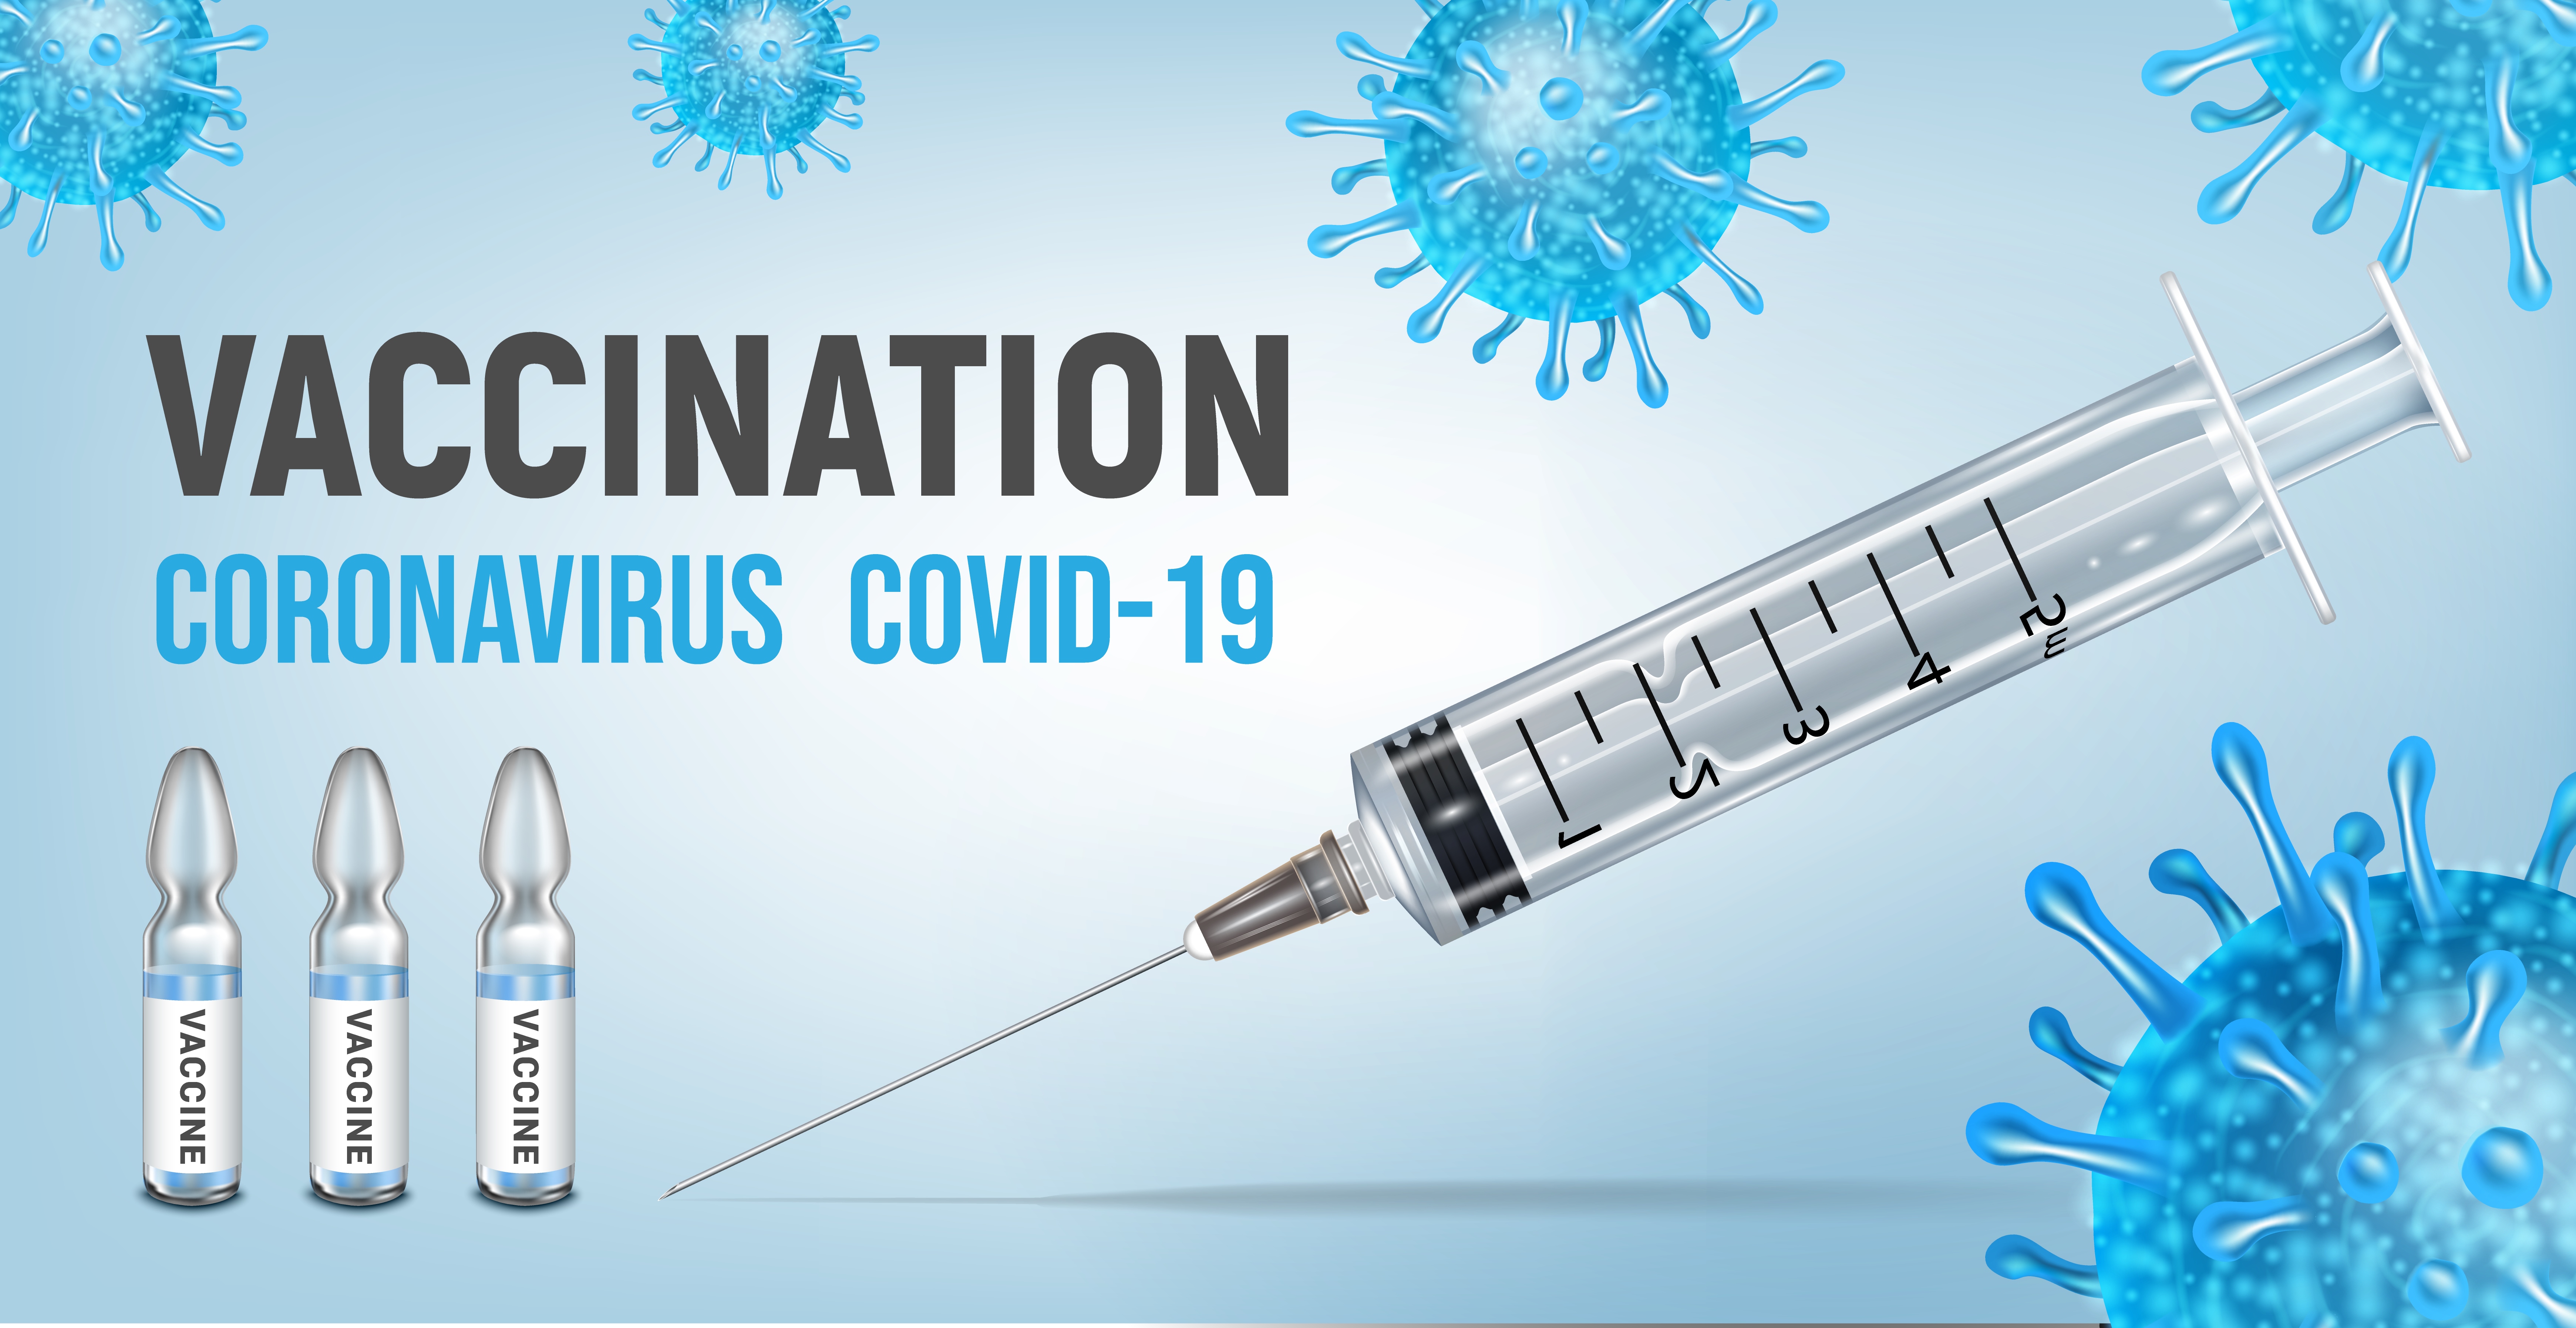 Вакцина против коронавирусной инфекции. Вакцинация Covid-19. Вакцинация картинки. Вакцинация от коронавируса баннер. Реклама вакцины от коронавируса.